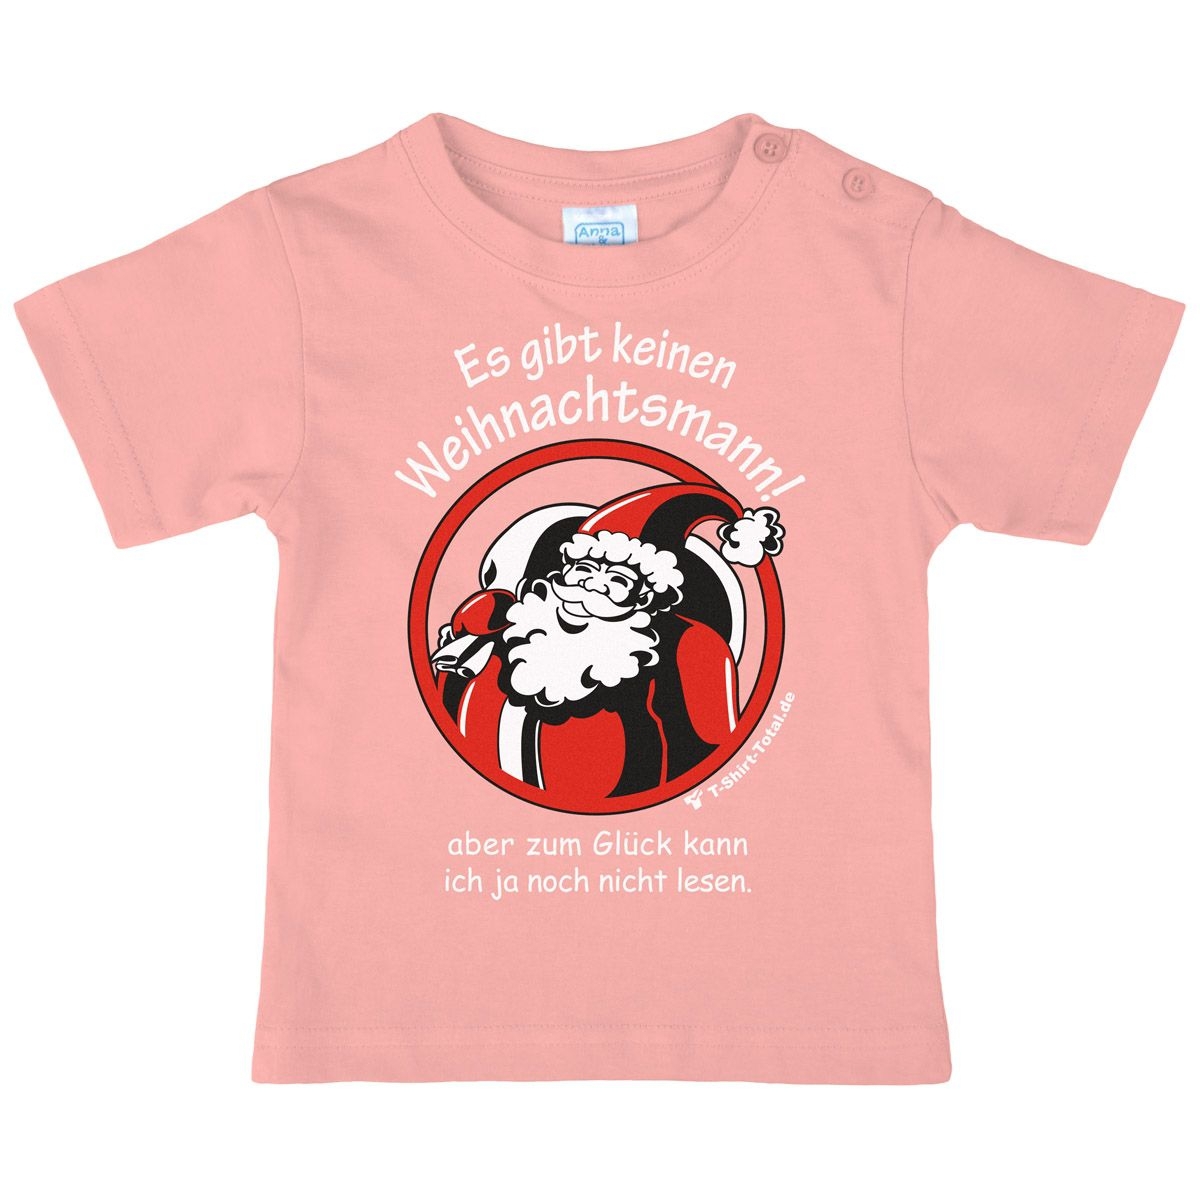 Gibt keinen Weihnachtsmann Kinder T-Shirt rosa 80 / 86